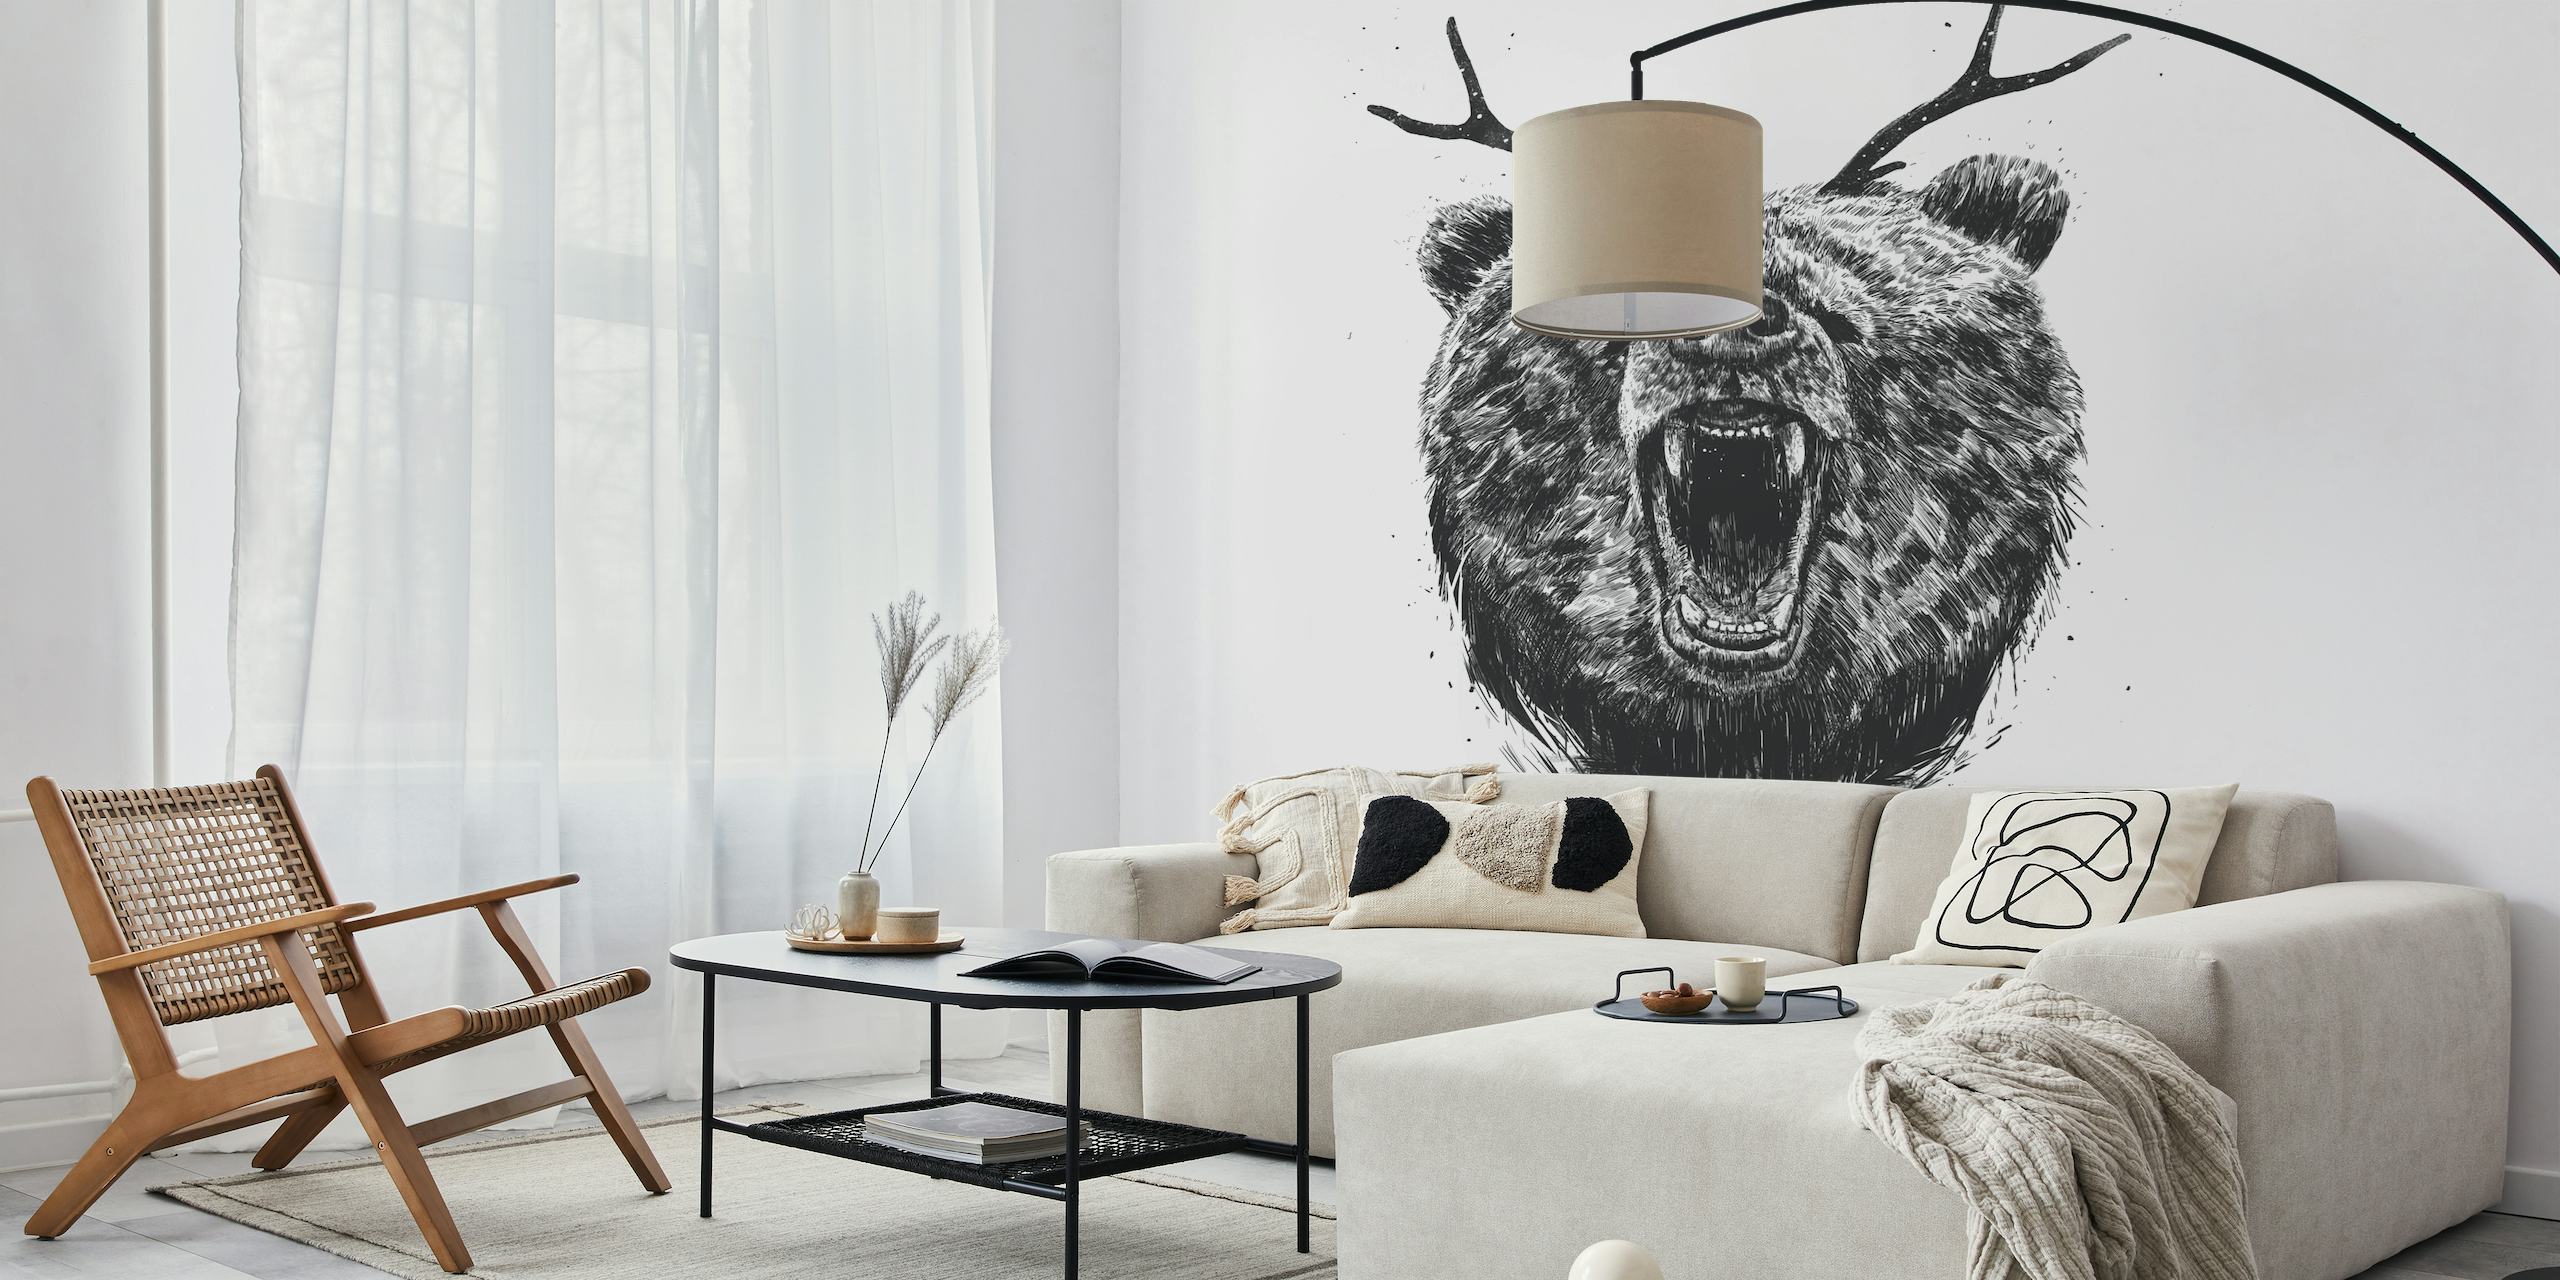 Fotomural en blanco y negro de un oso enojado con astas